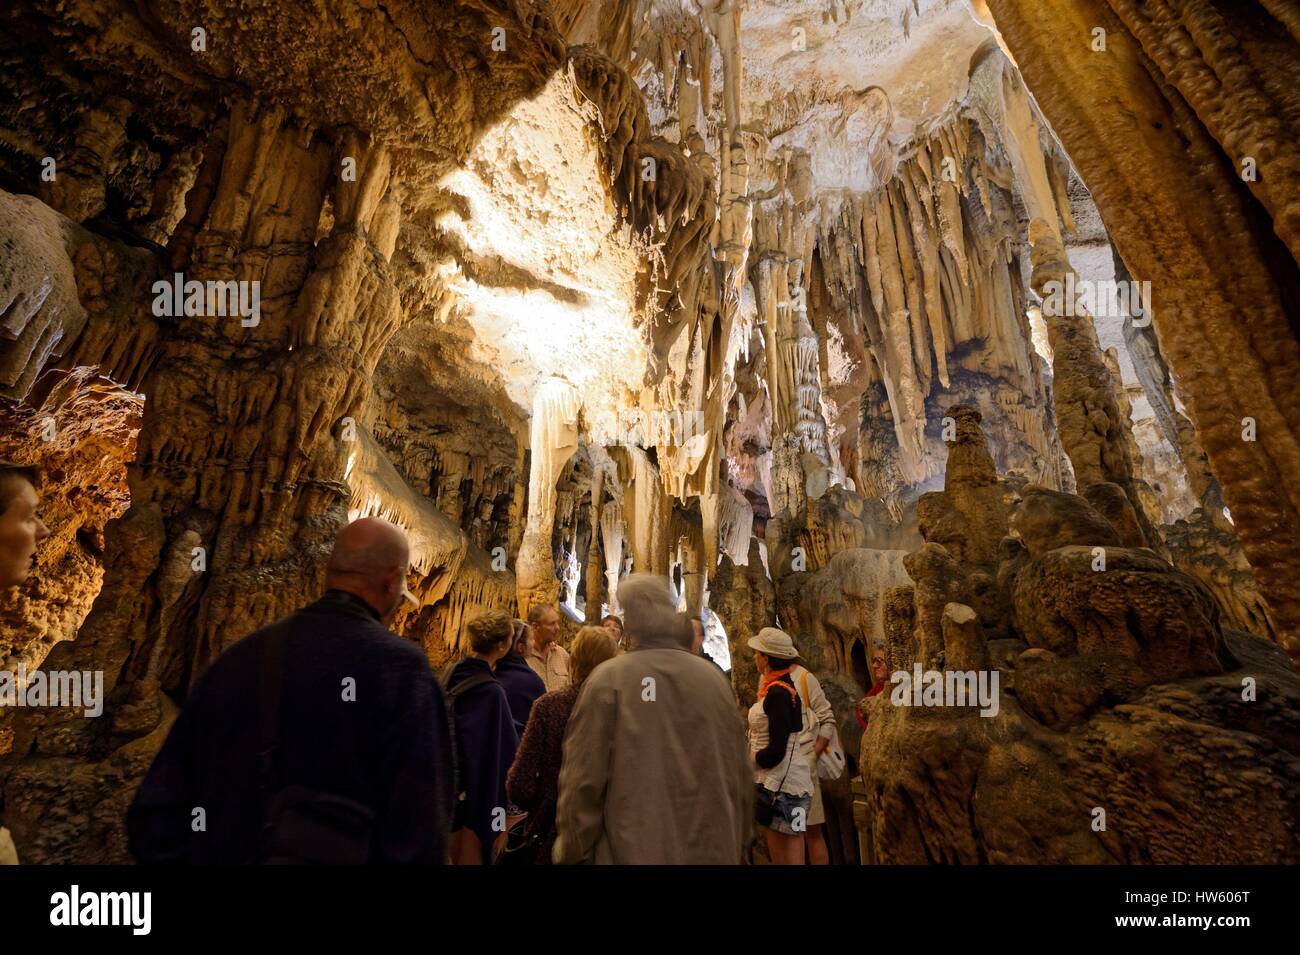 France, Herault, Saint Bauzile de Putois, Cave La Grotte des Demoiselles Stock Photo